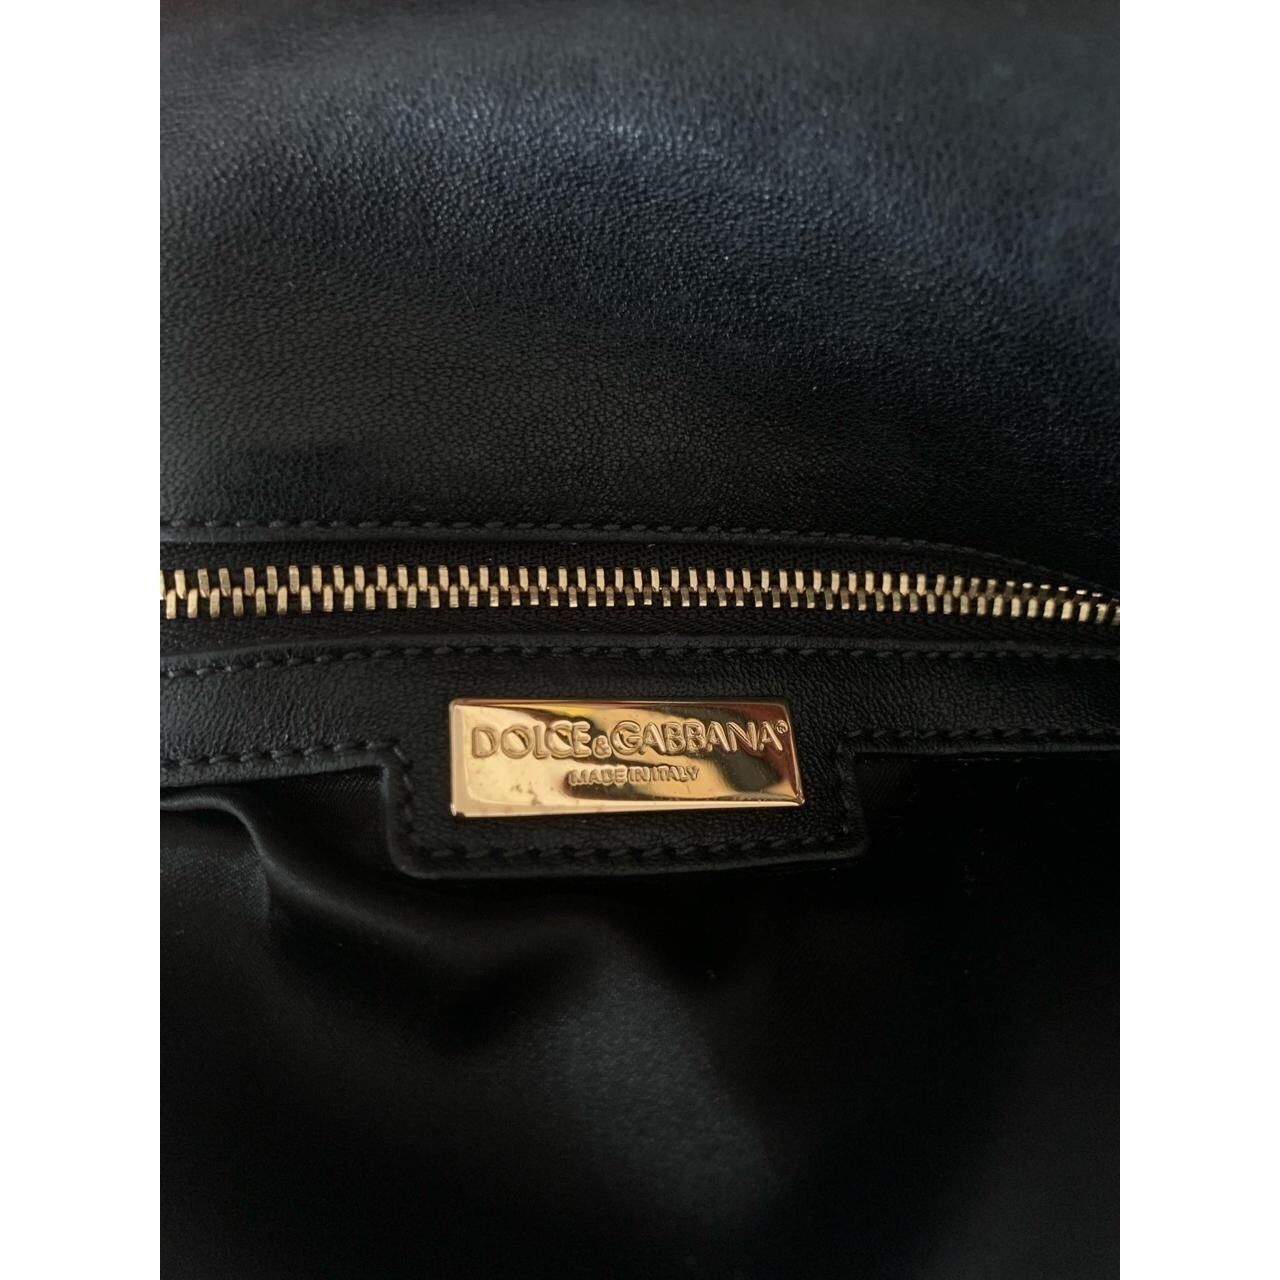 Dolce & Gabbana Miss Charles Silver & Black Shoulder Bag